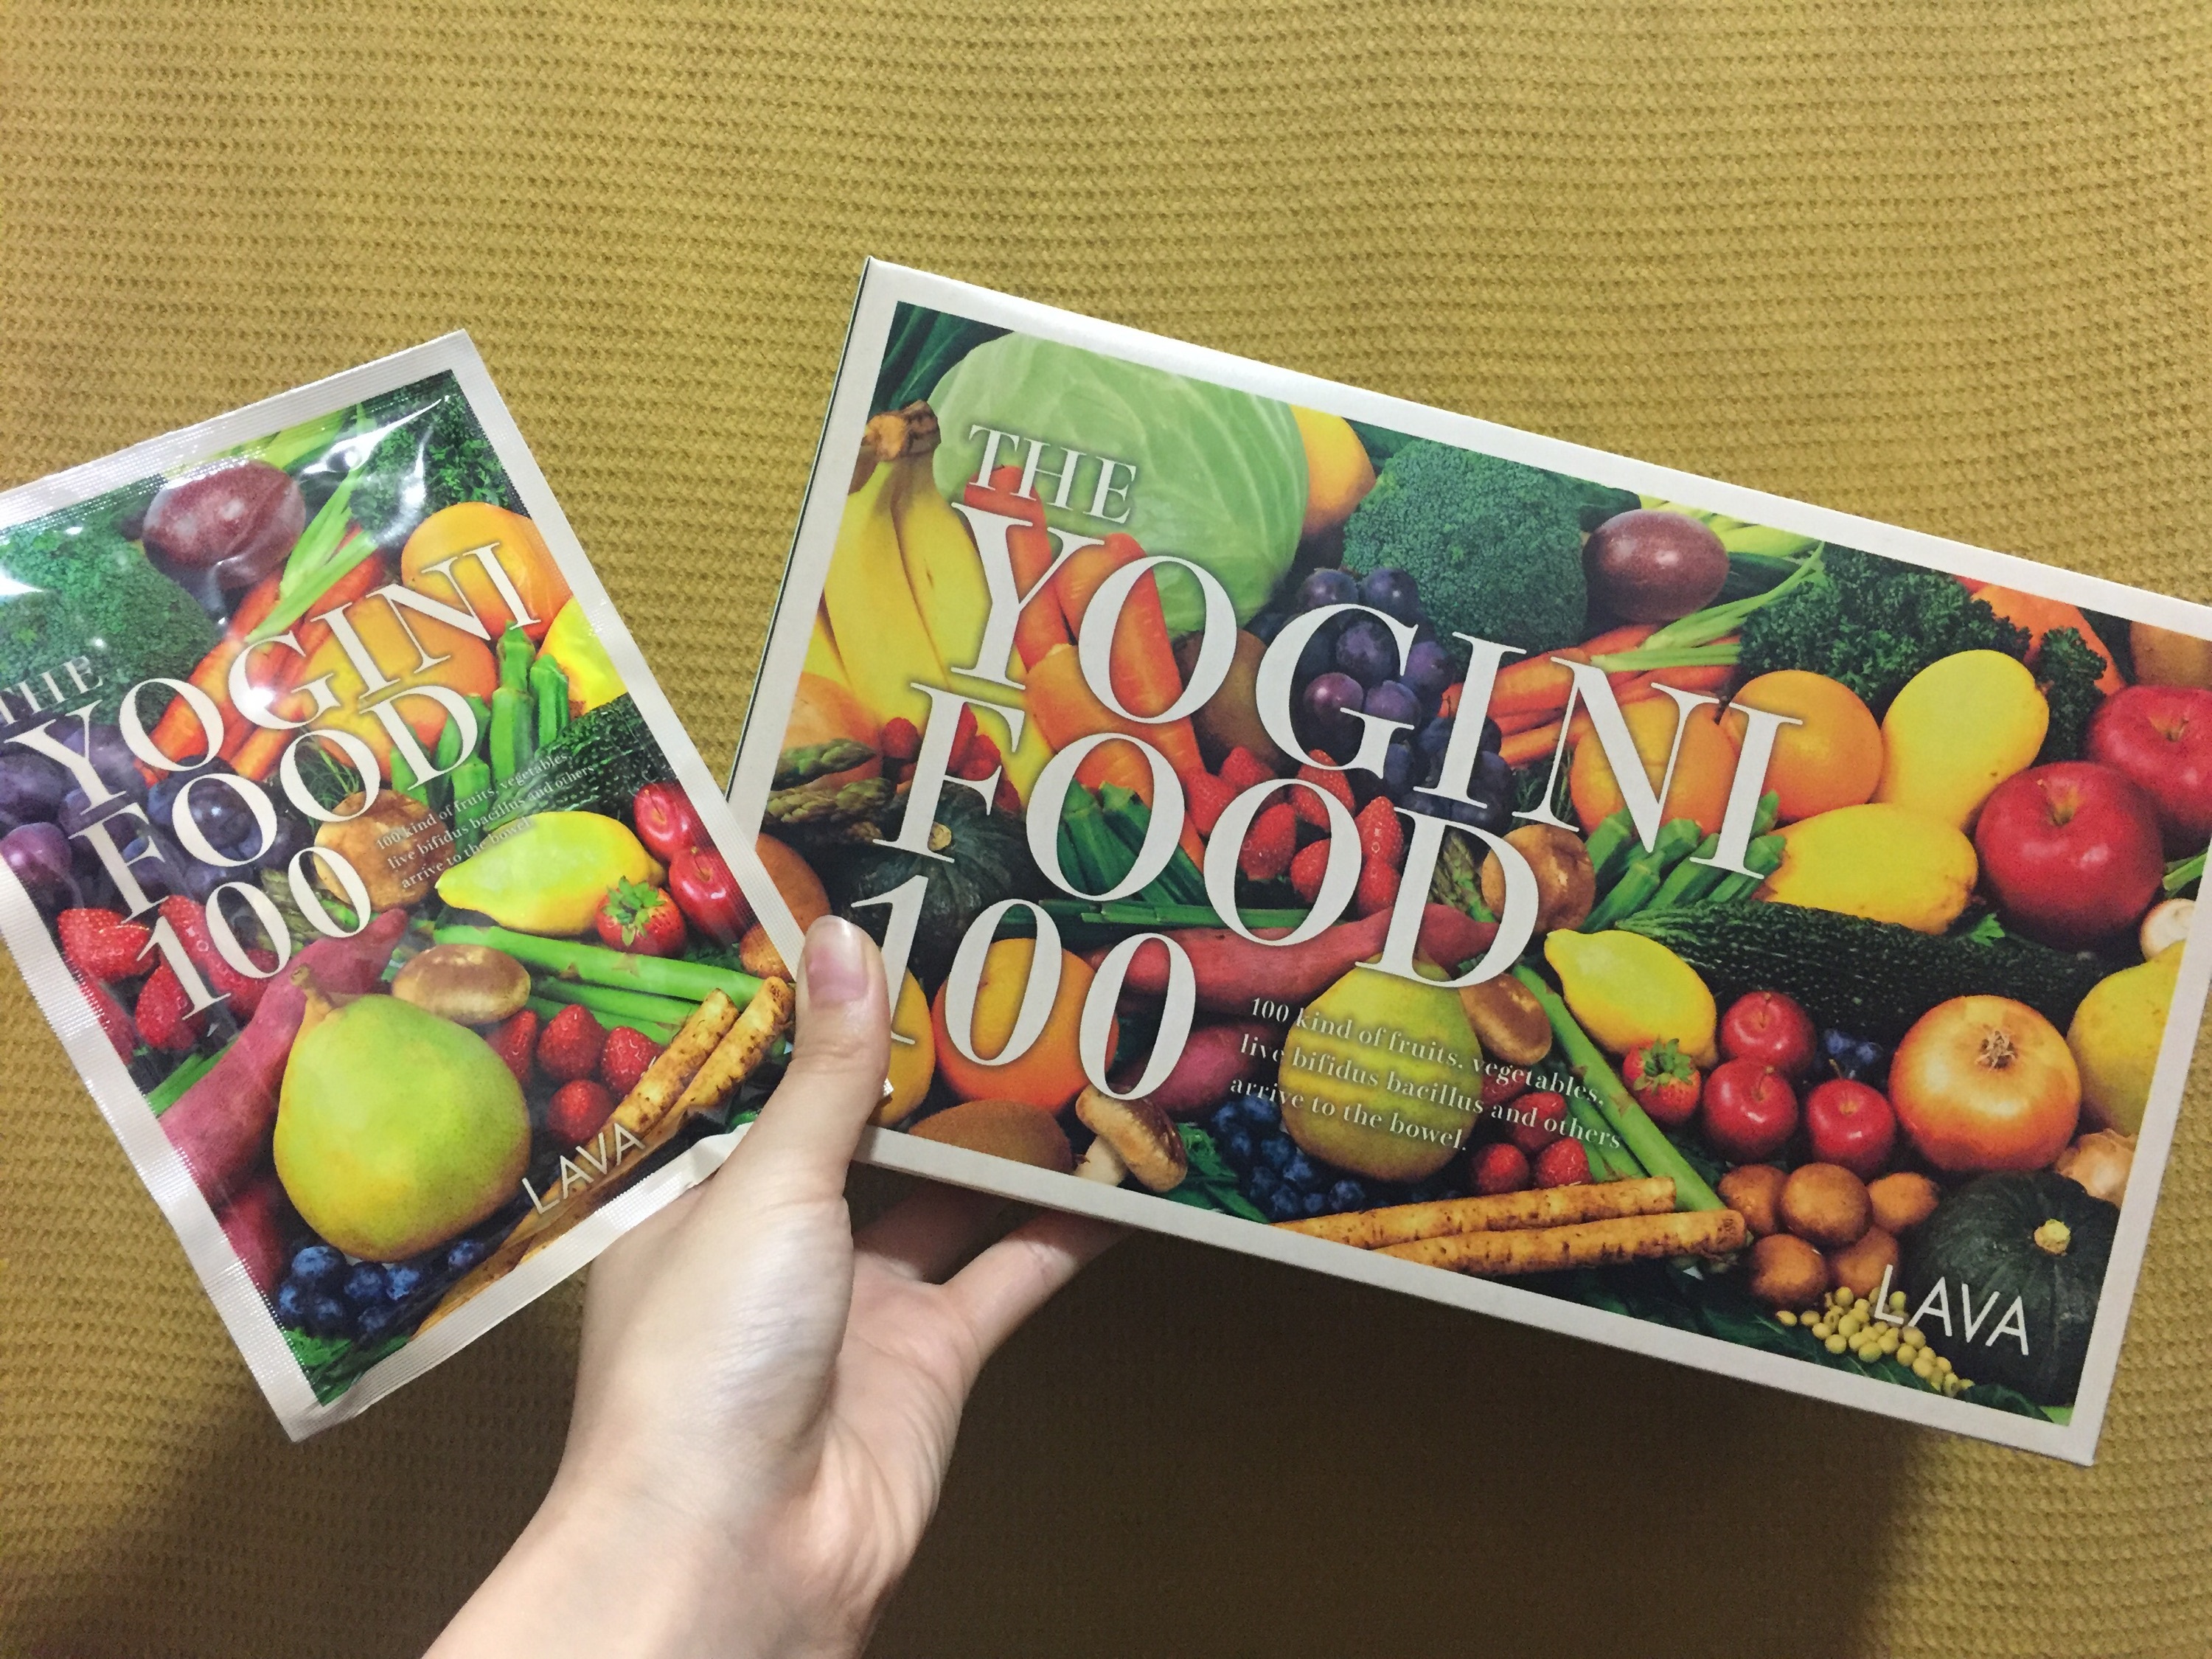 YOGINI FOOD 100 ストロベリ-&フルーツミックス詰め合わせ